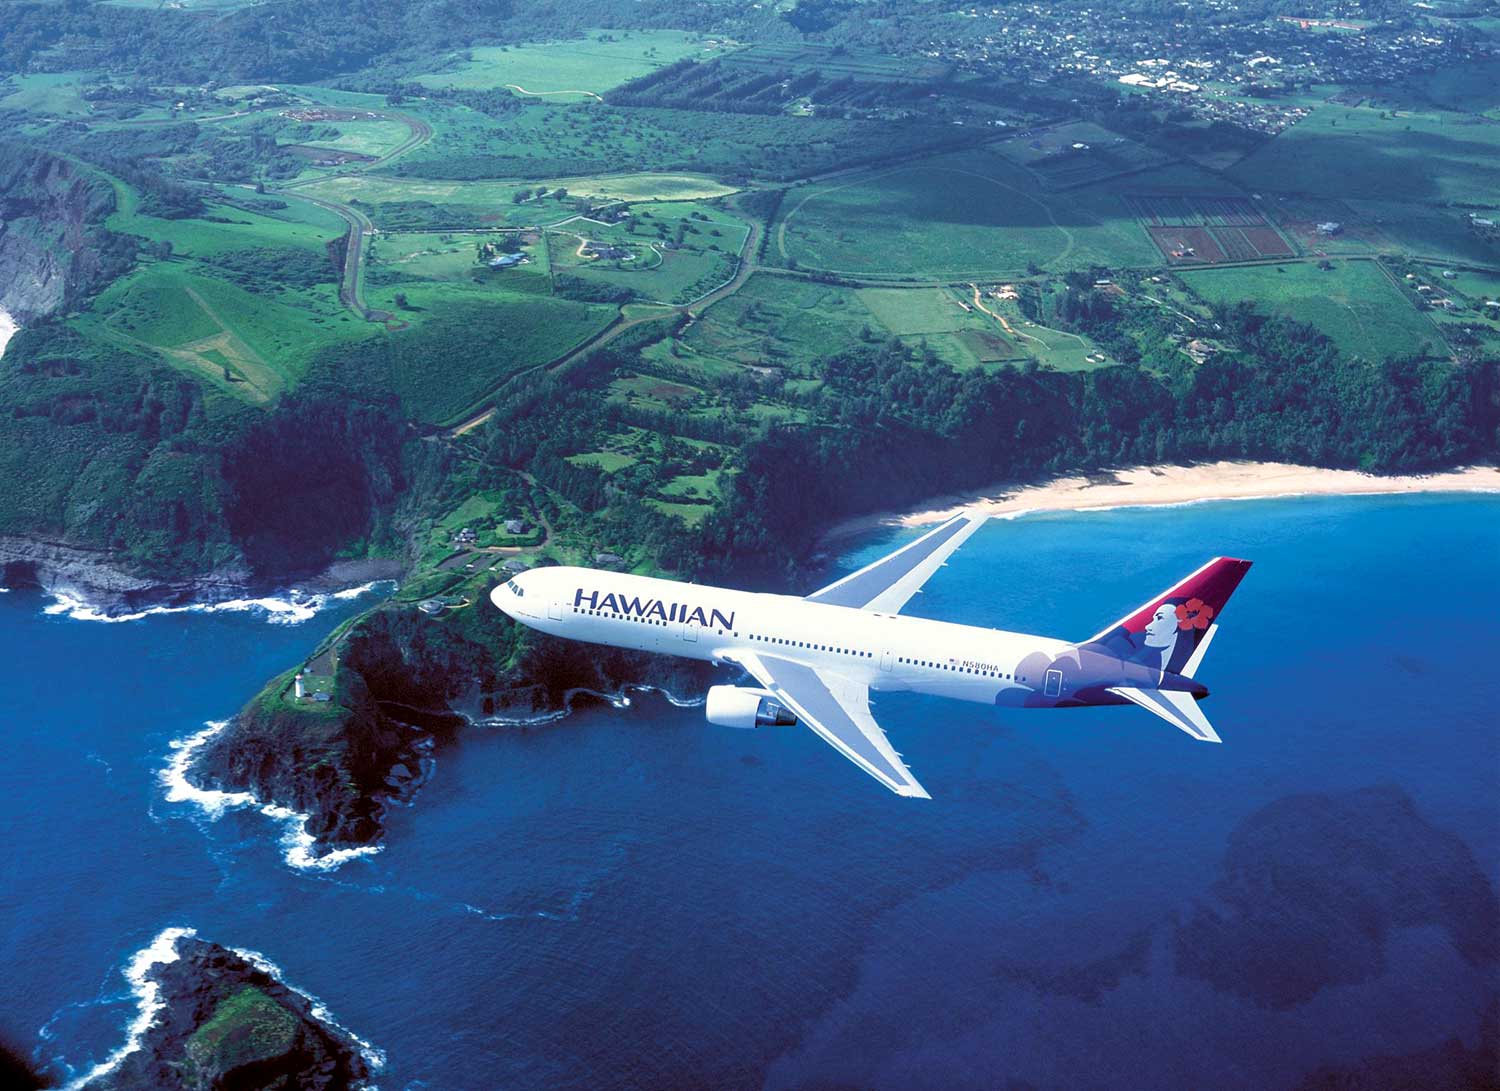 Hawaii Travel Deals: October 2010